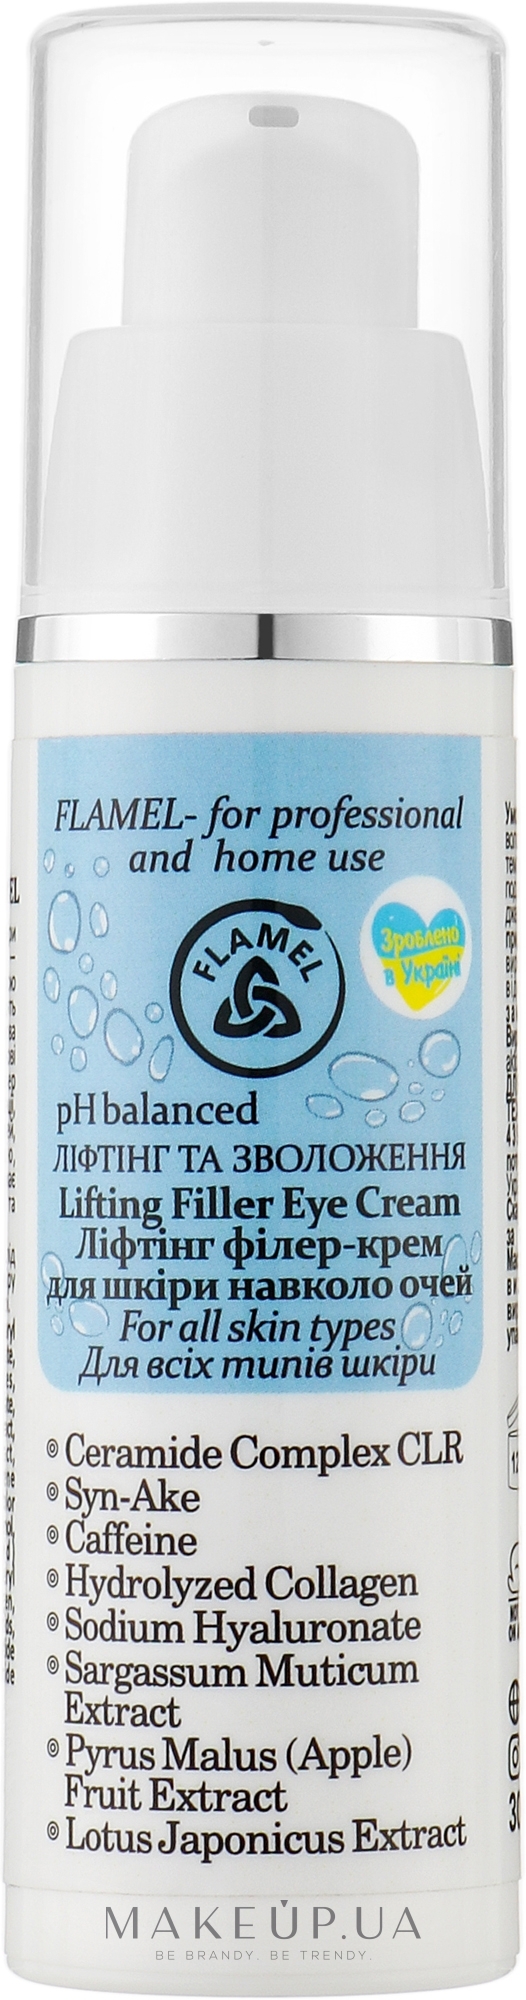 Лифтинг-филлер крем для кожи вокруг глаз - FLAMEL Lifting Filler Eye Cream — фото 30ml